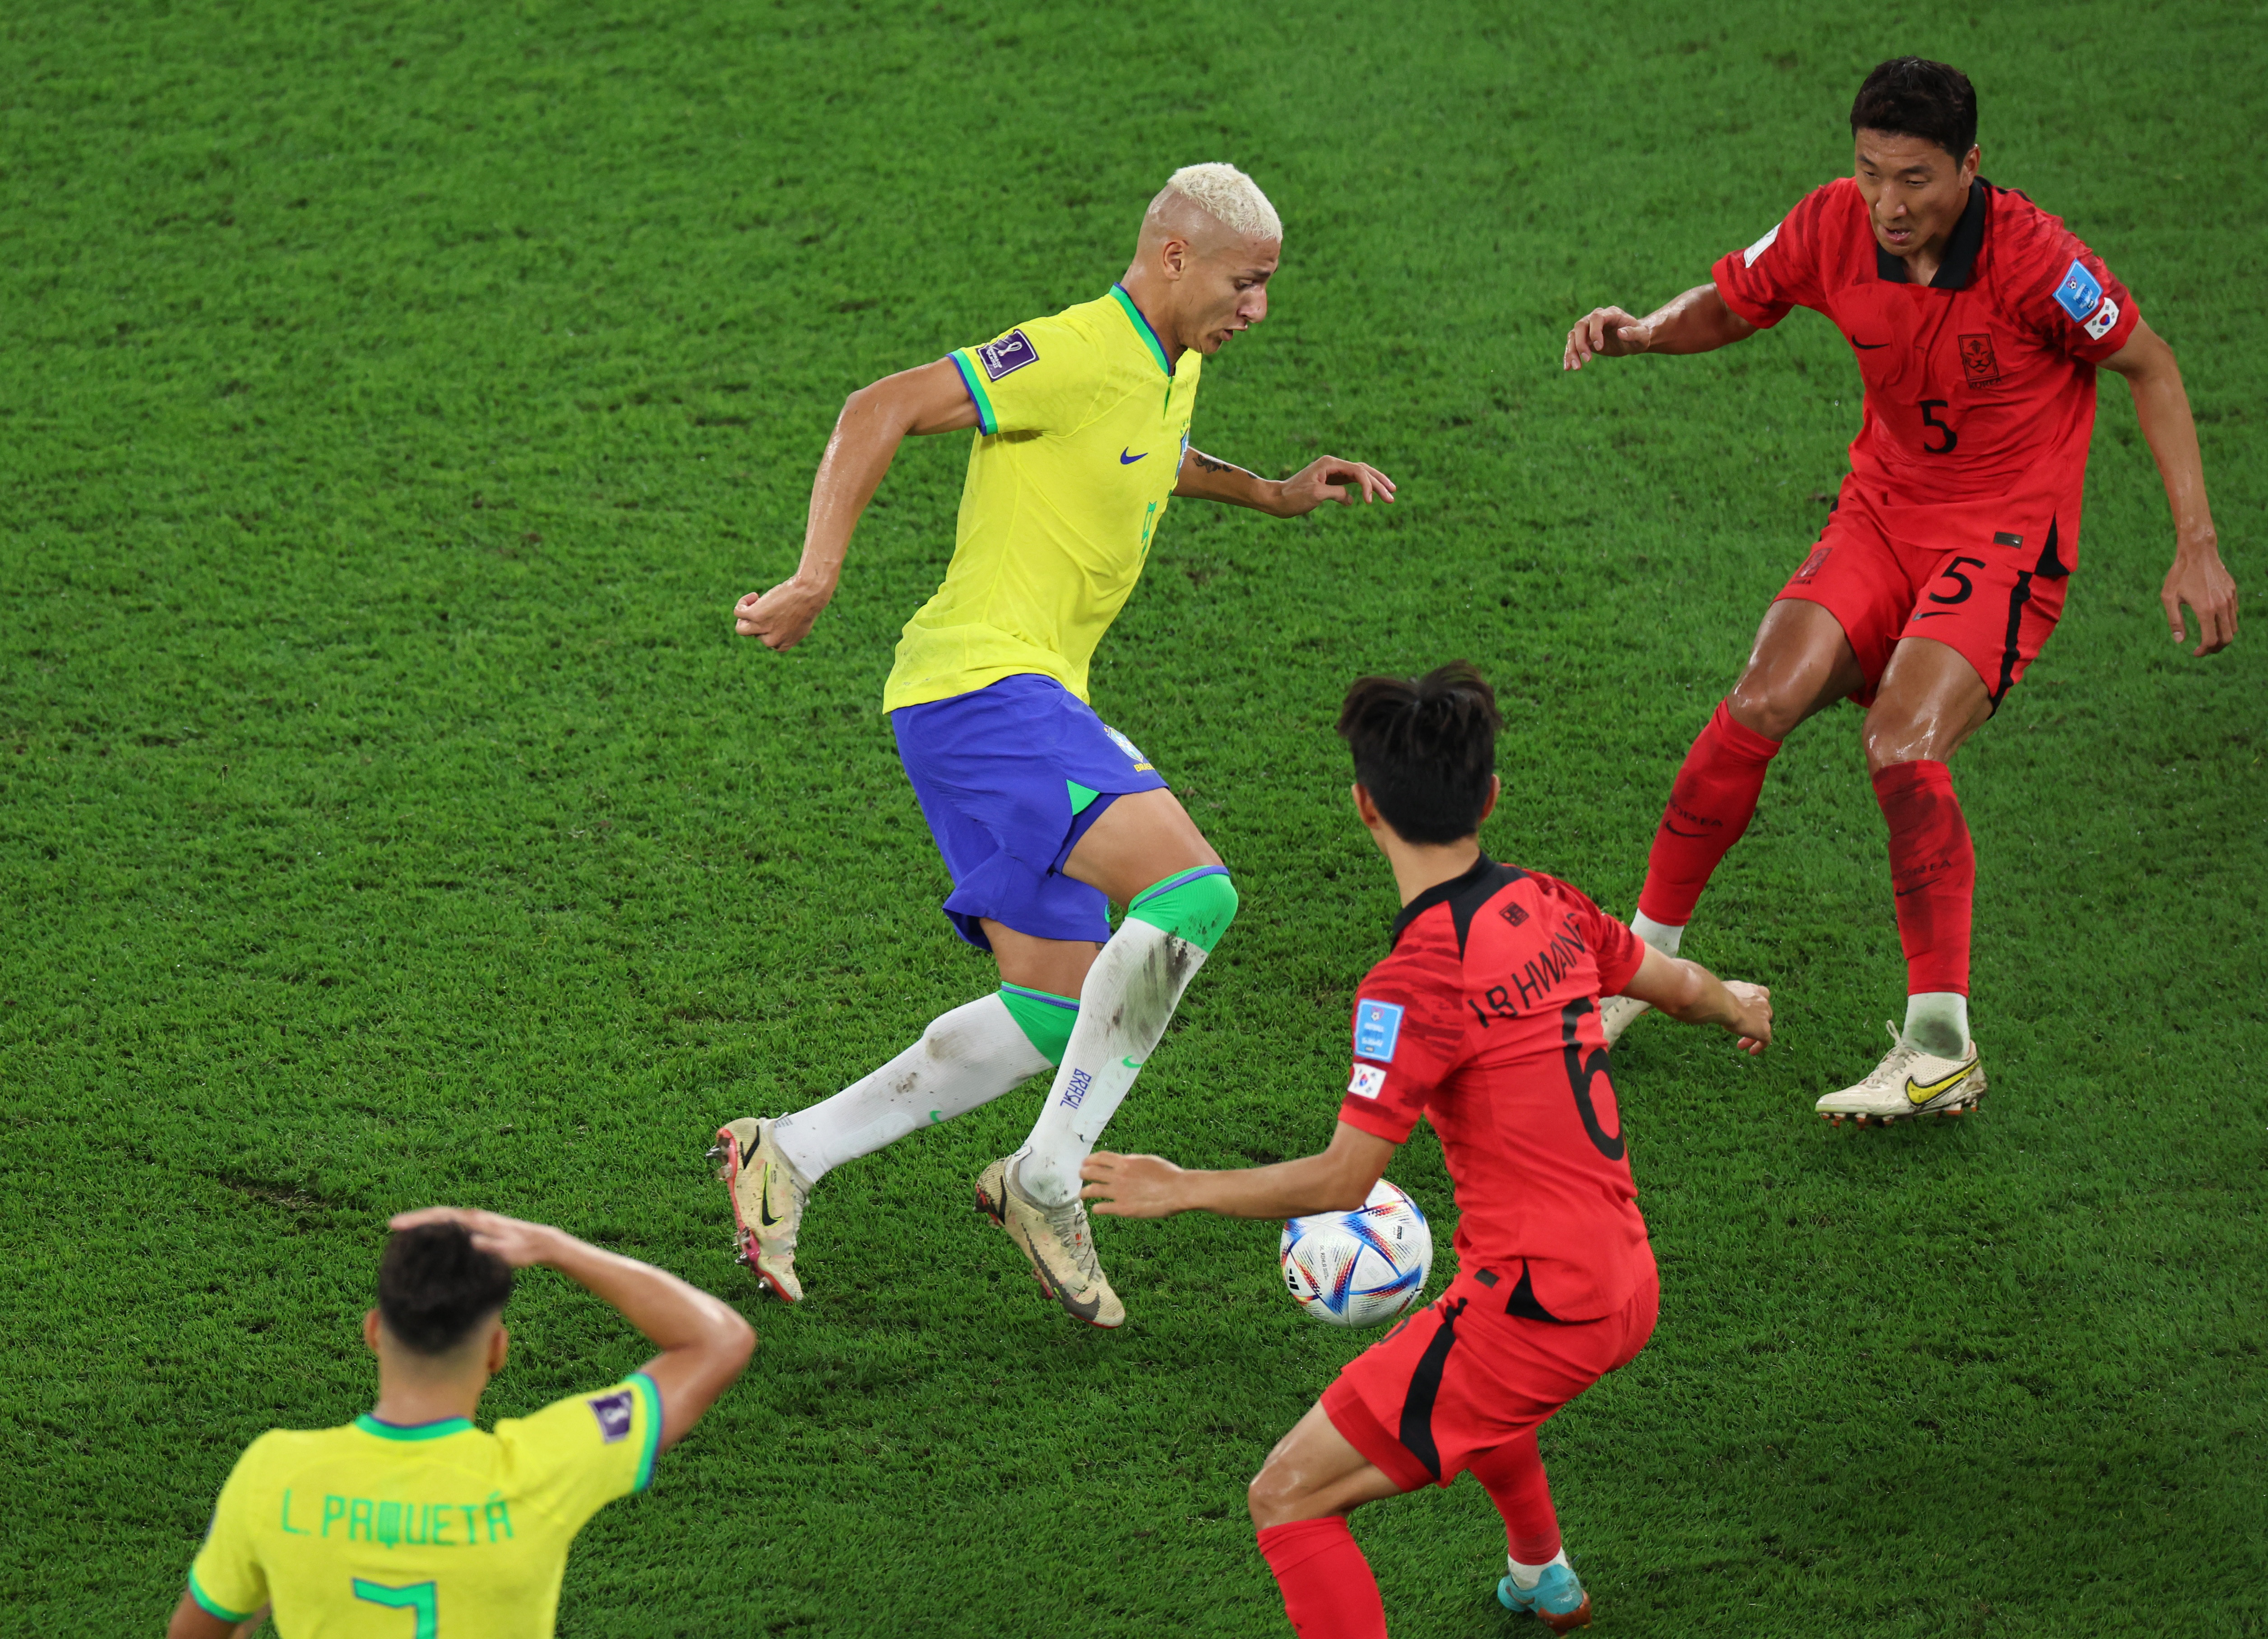 Al bajar la pelota, el delantero brasileño descarga para Marquinhos, quien toca para Thiago Silva. El defensor, ubicado en la medialuna, toca de primera con mucha precisión para la llegada a toda velocidad de Richarlison